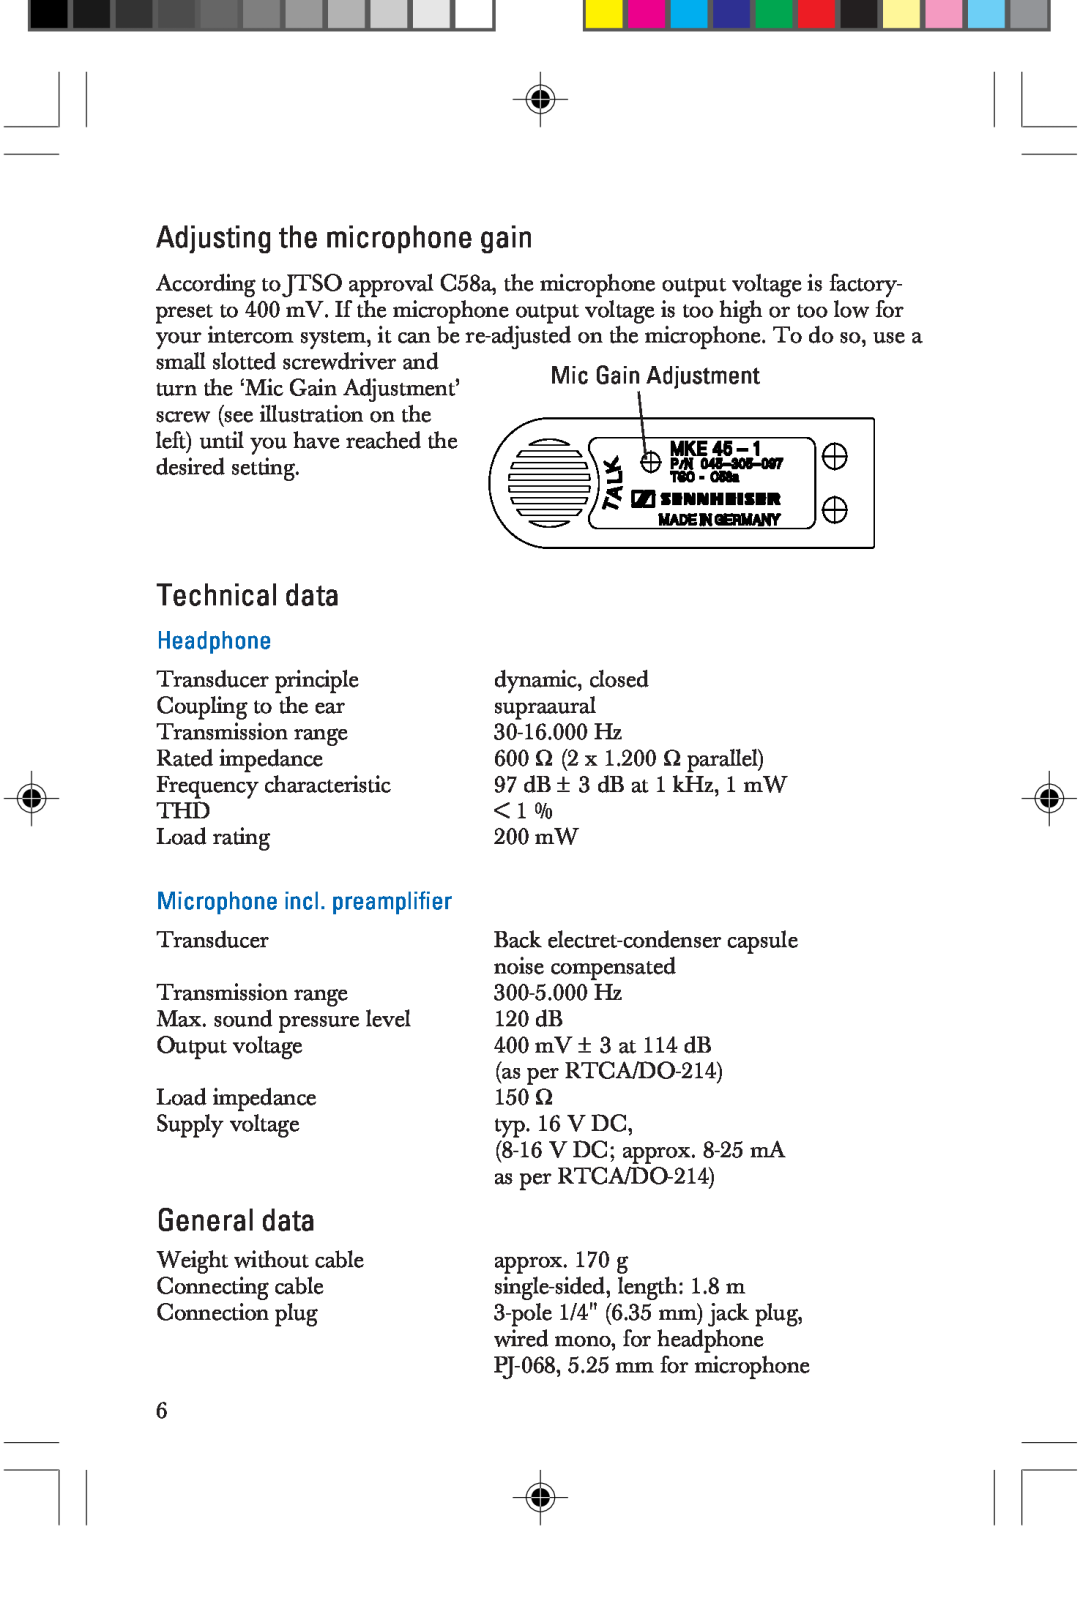 Sennheiser HME 25-KA-2, P/N 025-250-015 manual Adjusting the microphone gain, Technical data, General data, Headphone 